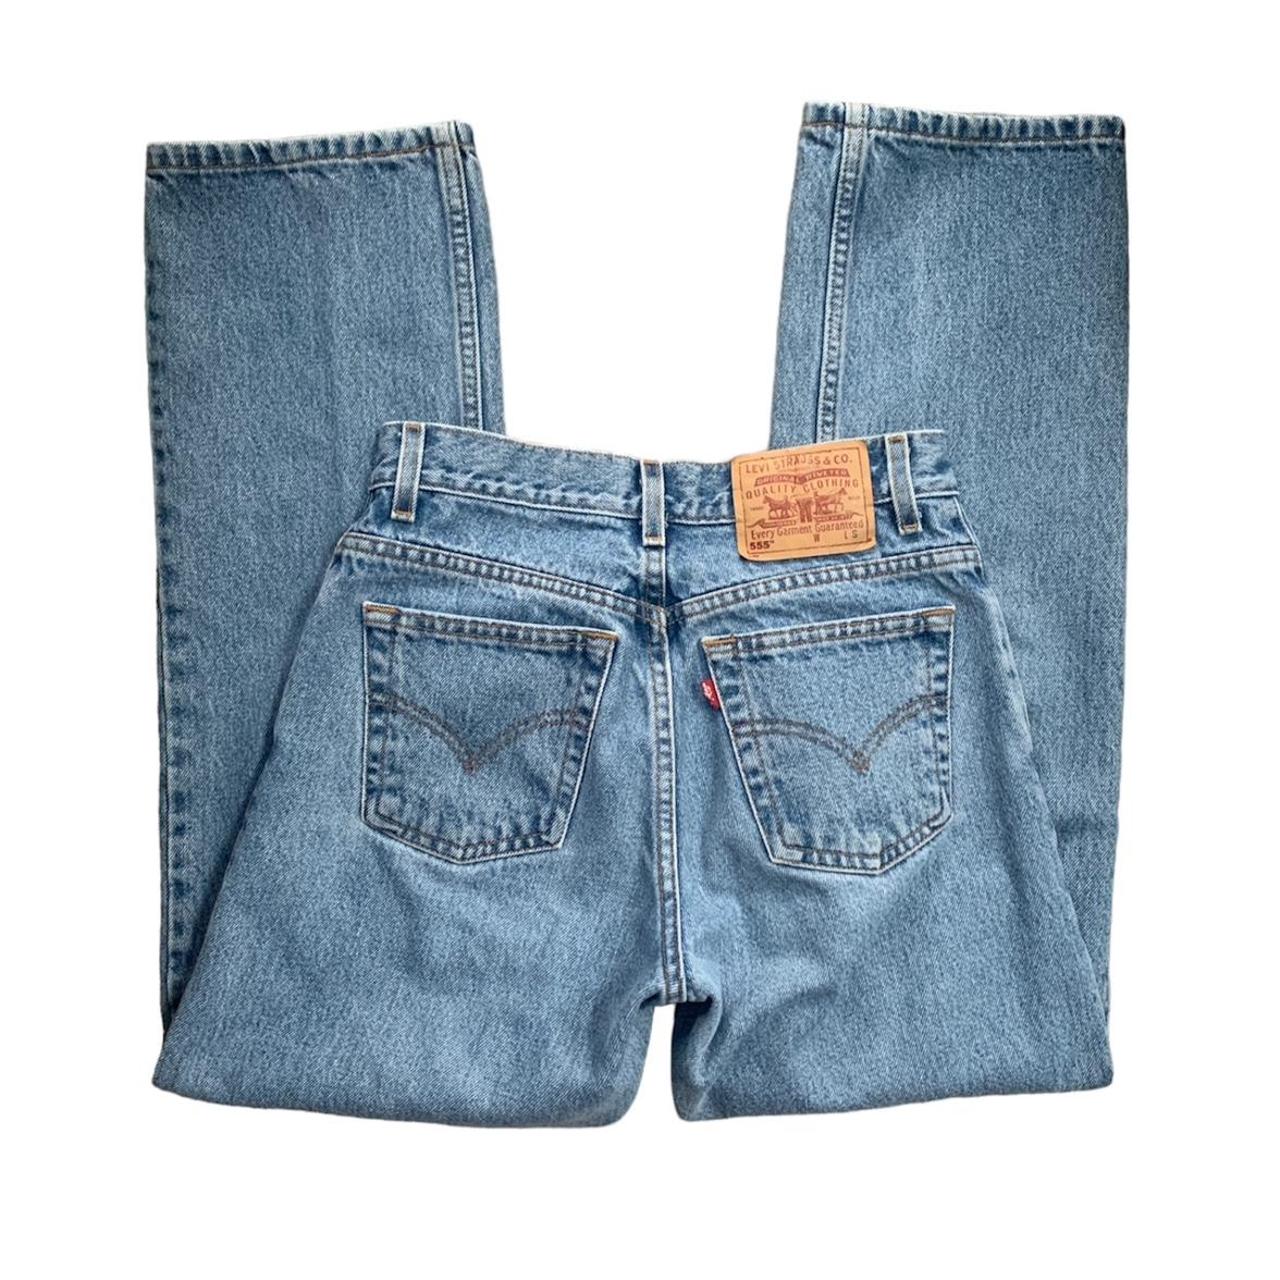 Vintage Levi’s 555 guys fit low rise jeans Light... - Depop